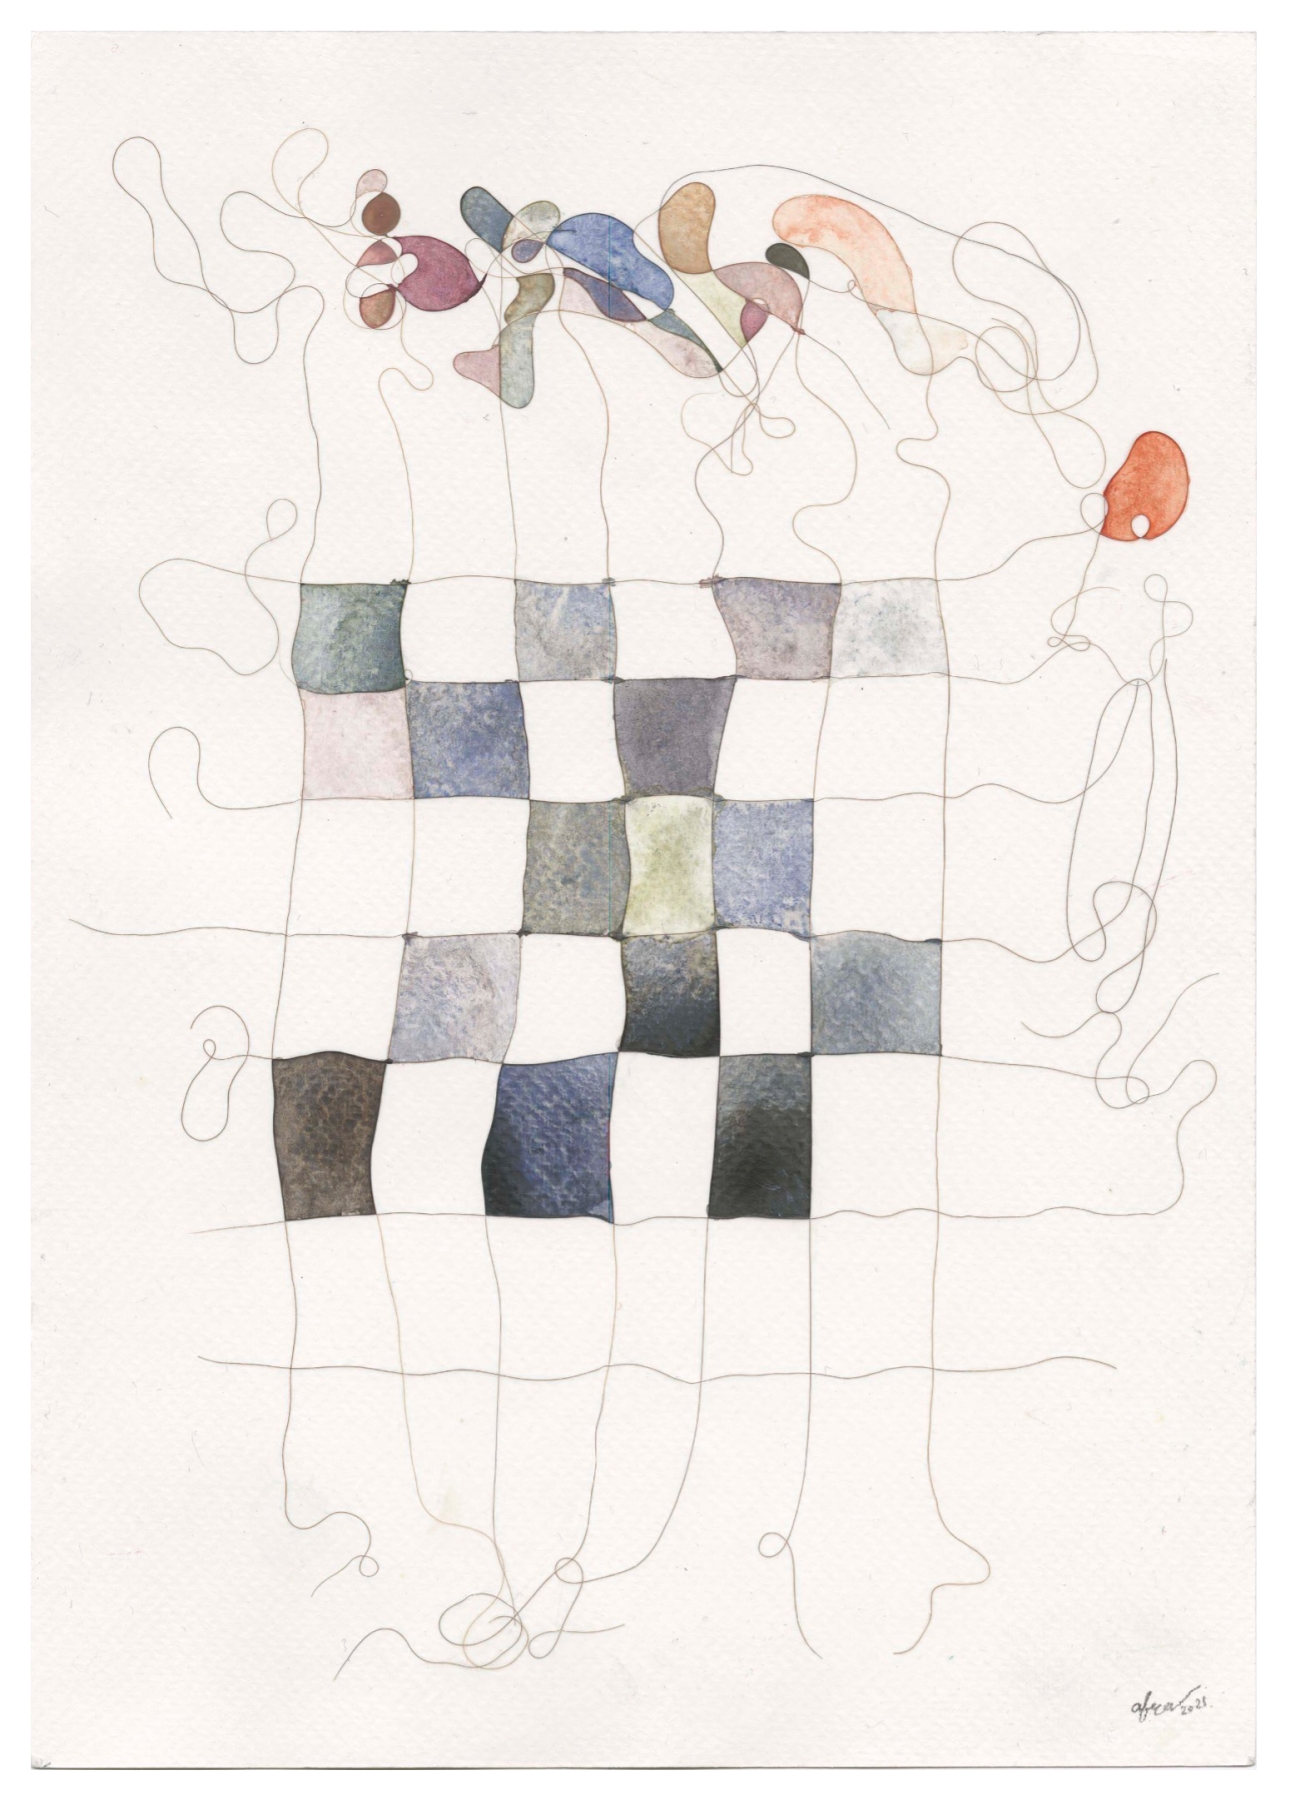 Afra Al Dhaheri, Hair Grid, 2021, artist&amp;#39;s hair and watercolor on paper, 11 in x 8.5 in